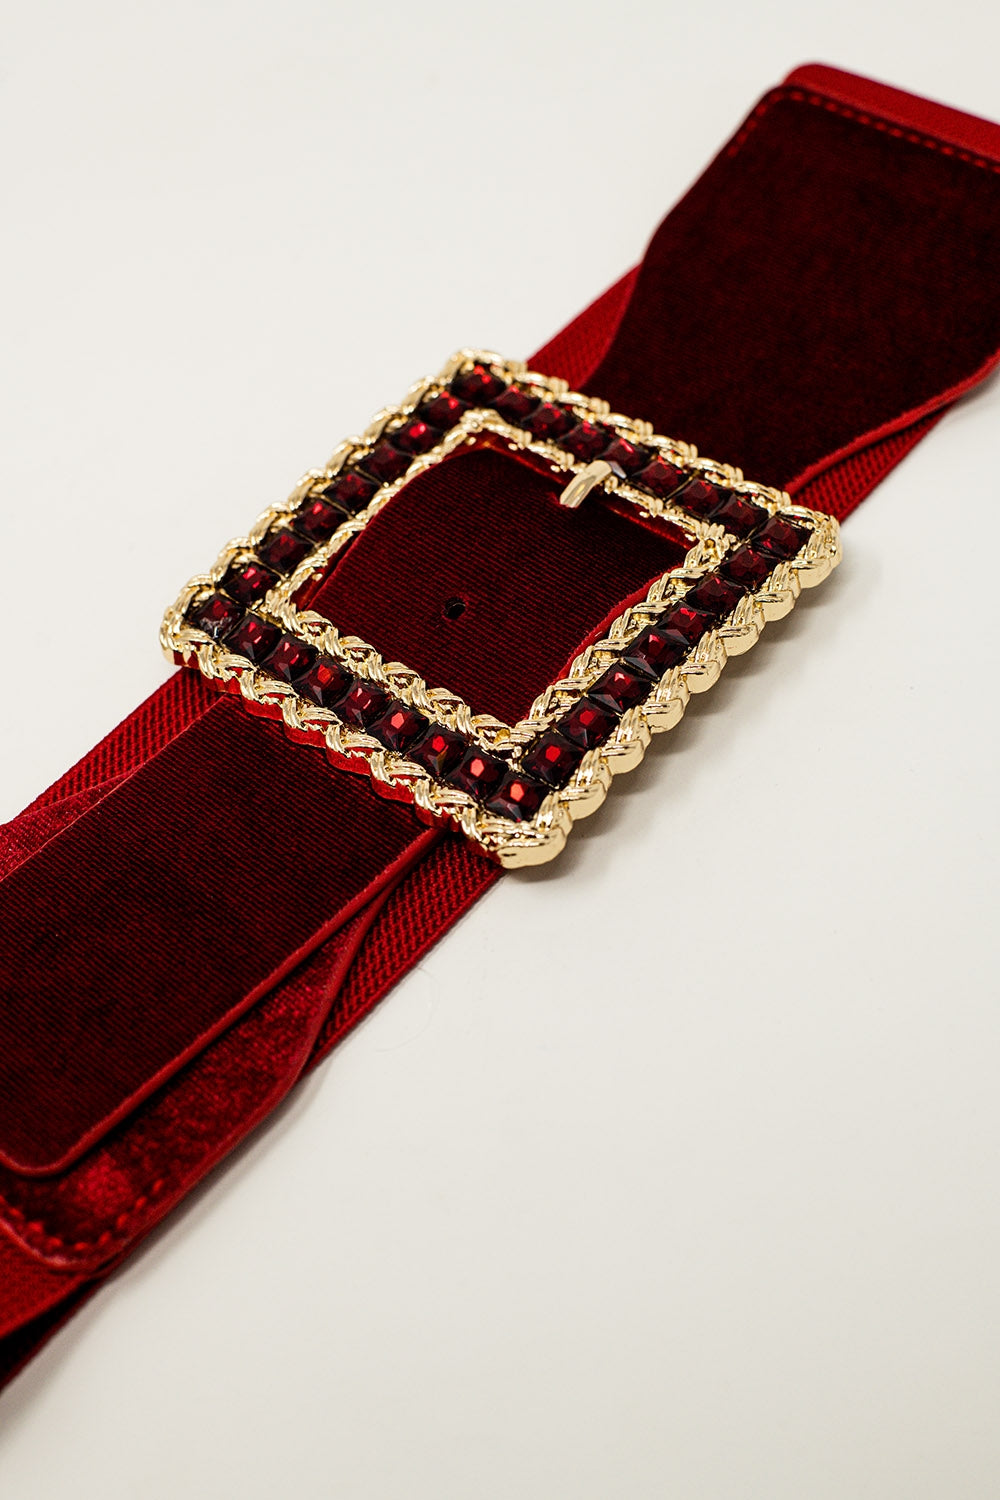 Cintura rossa quadrata con strass ed elastico regolabile